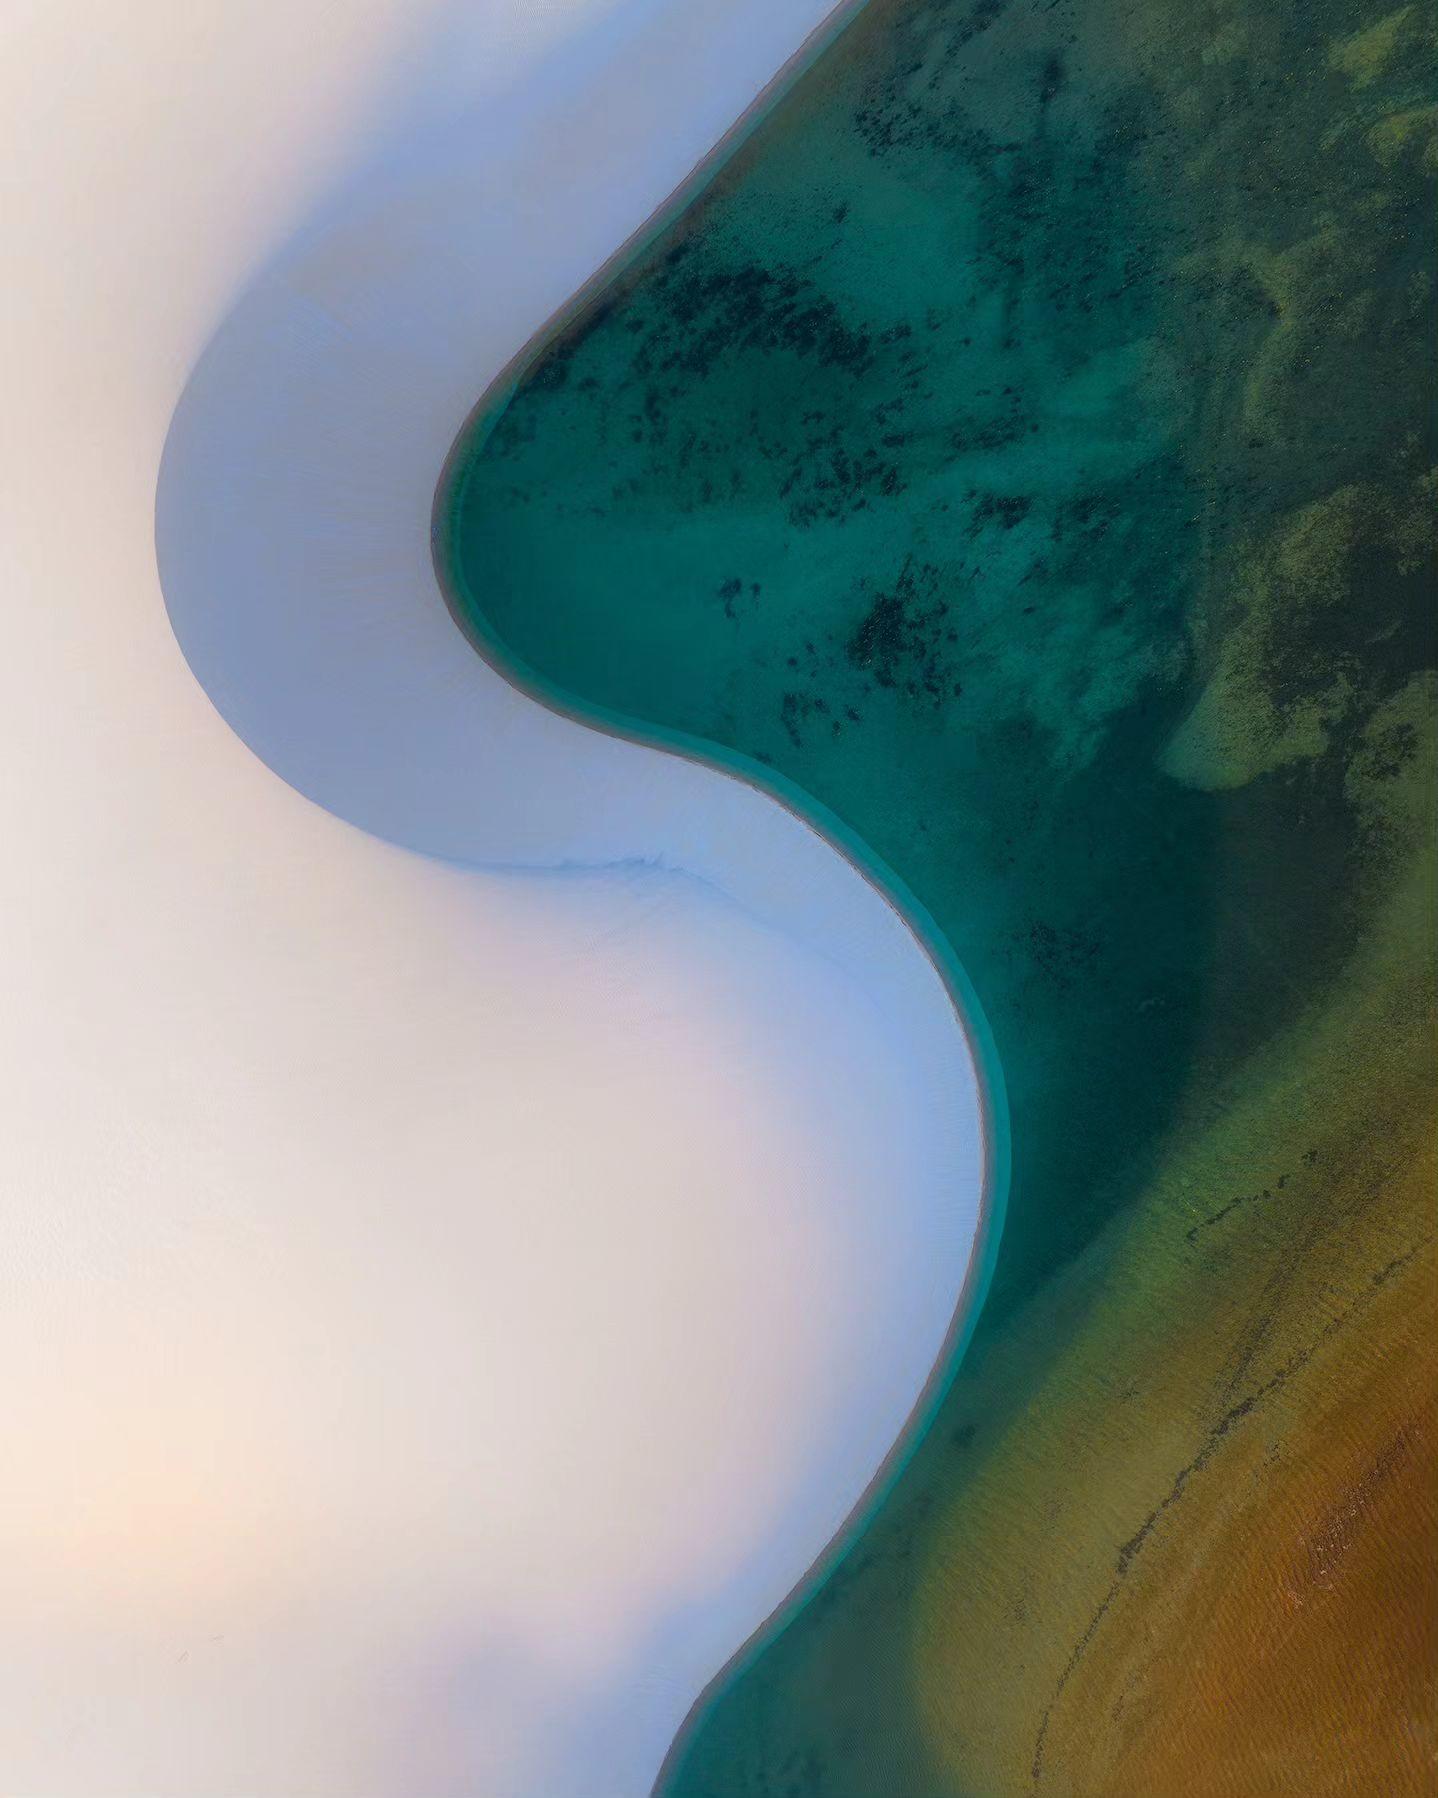  沙漠的形状，来自摄影师Daniel Kordan。 